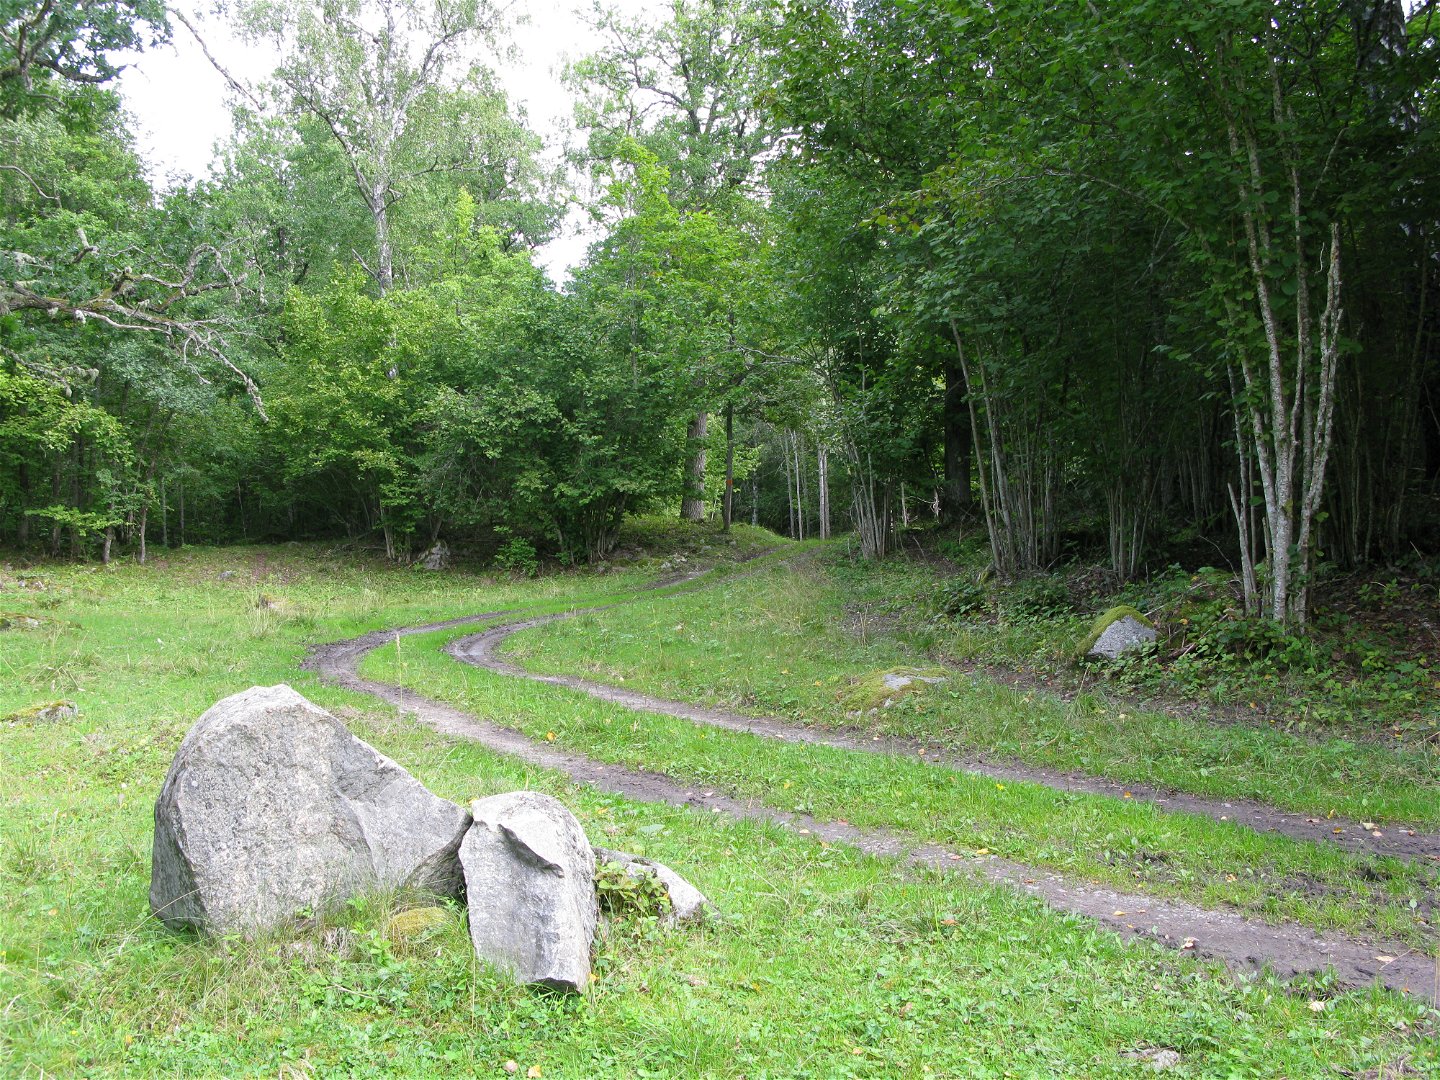 Två smala stigar löper parallelt över en gräsyta. I bakgrunden är det skog och i förgrunden finns några större stenar.